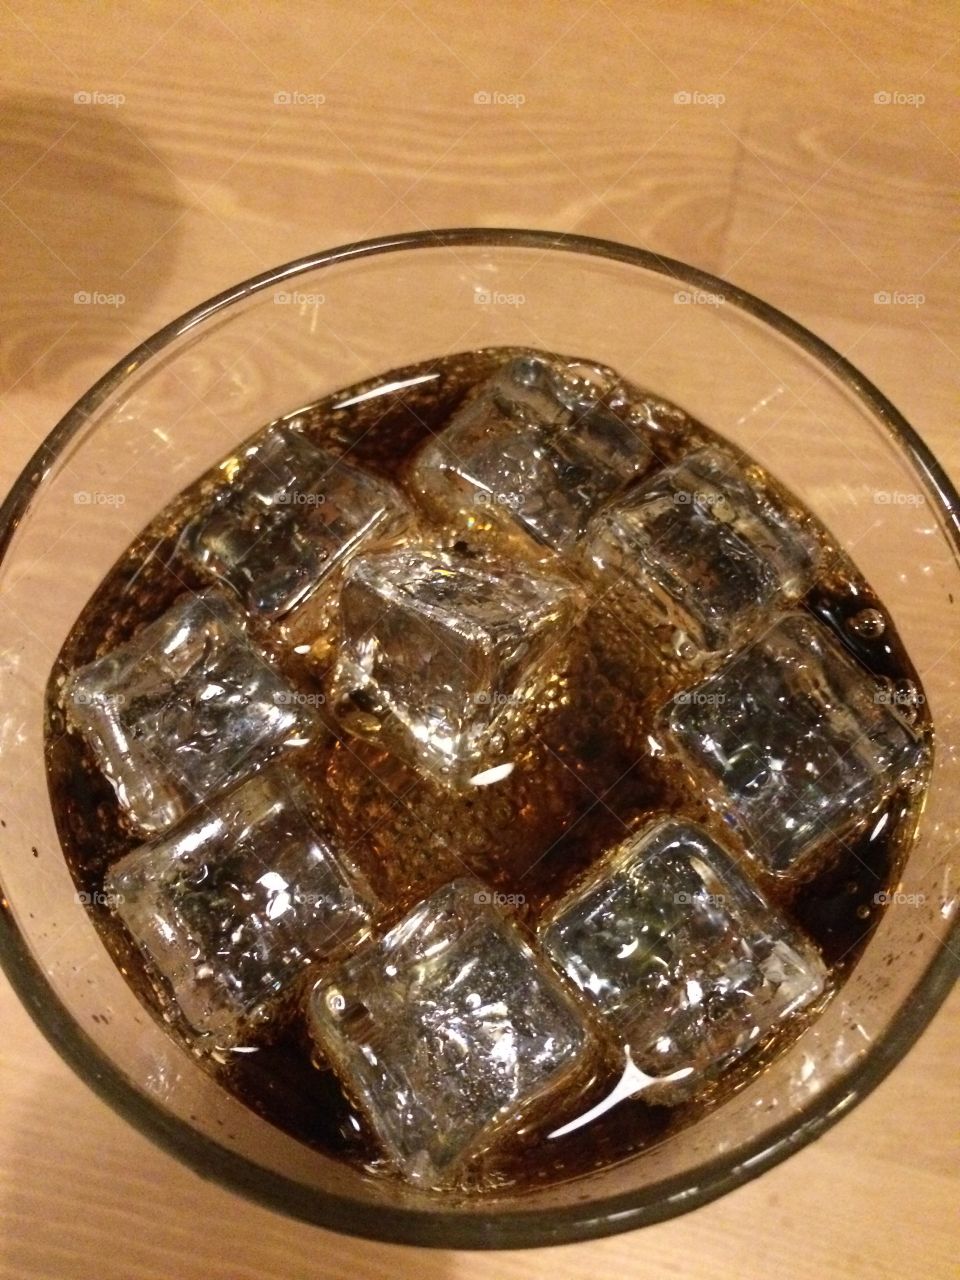 Coke with ice